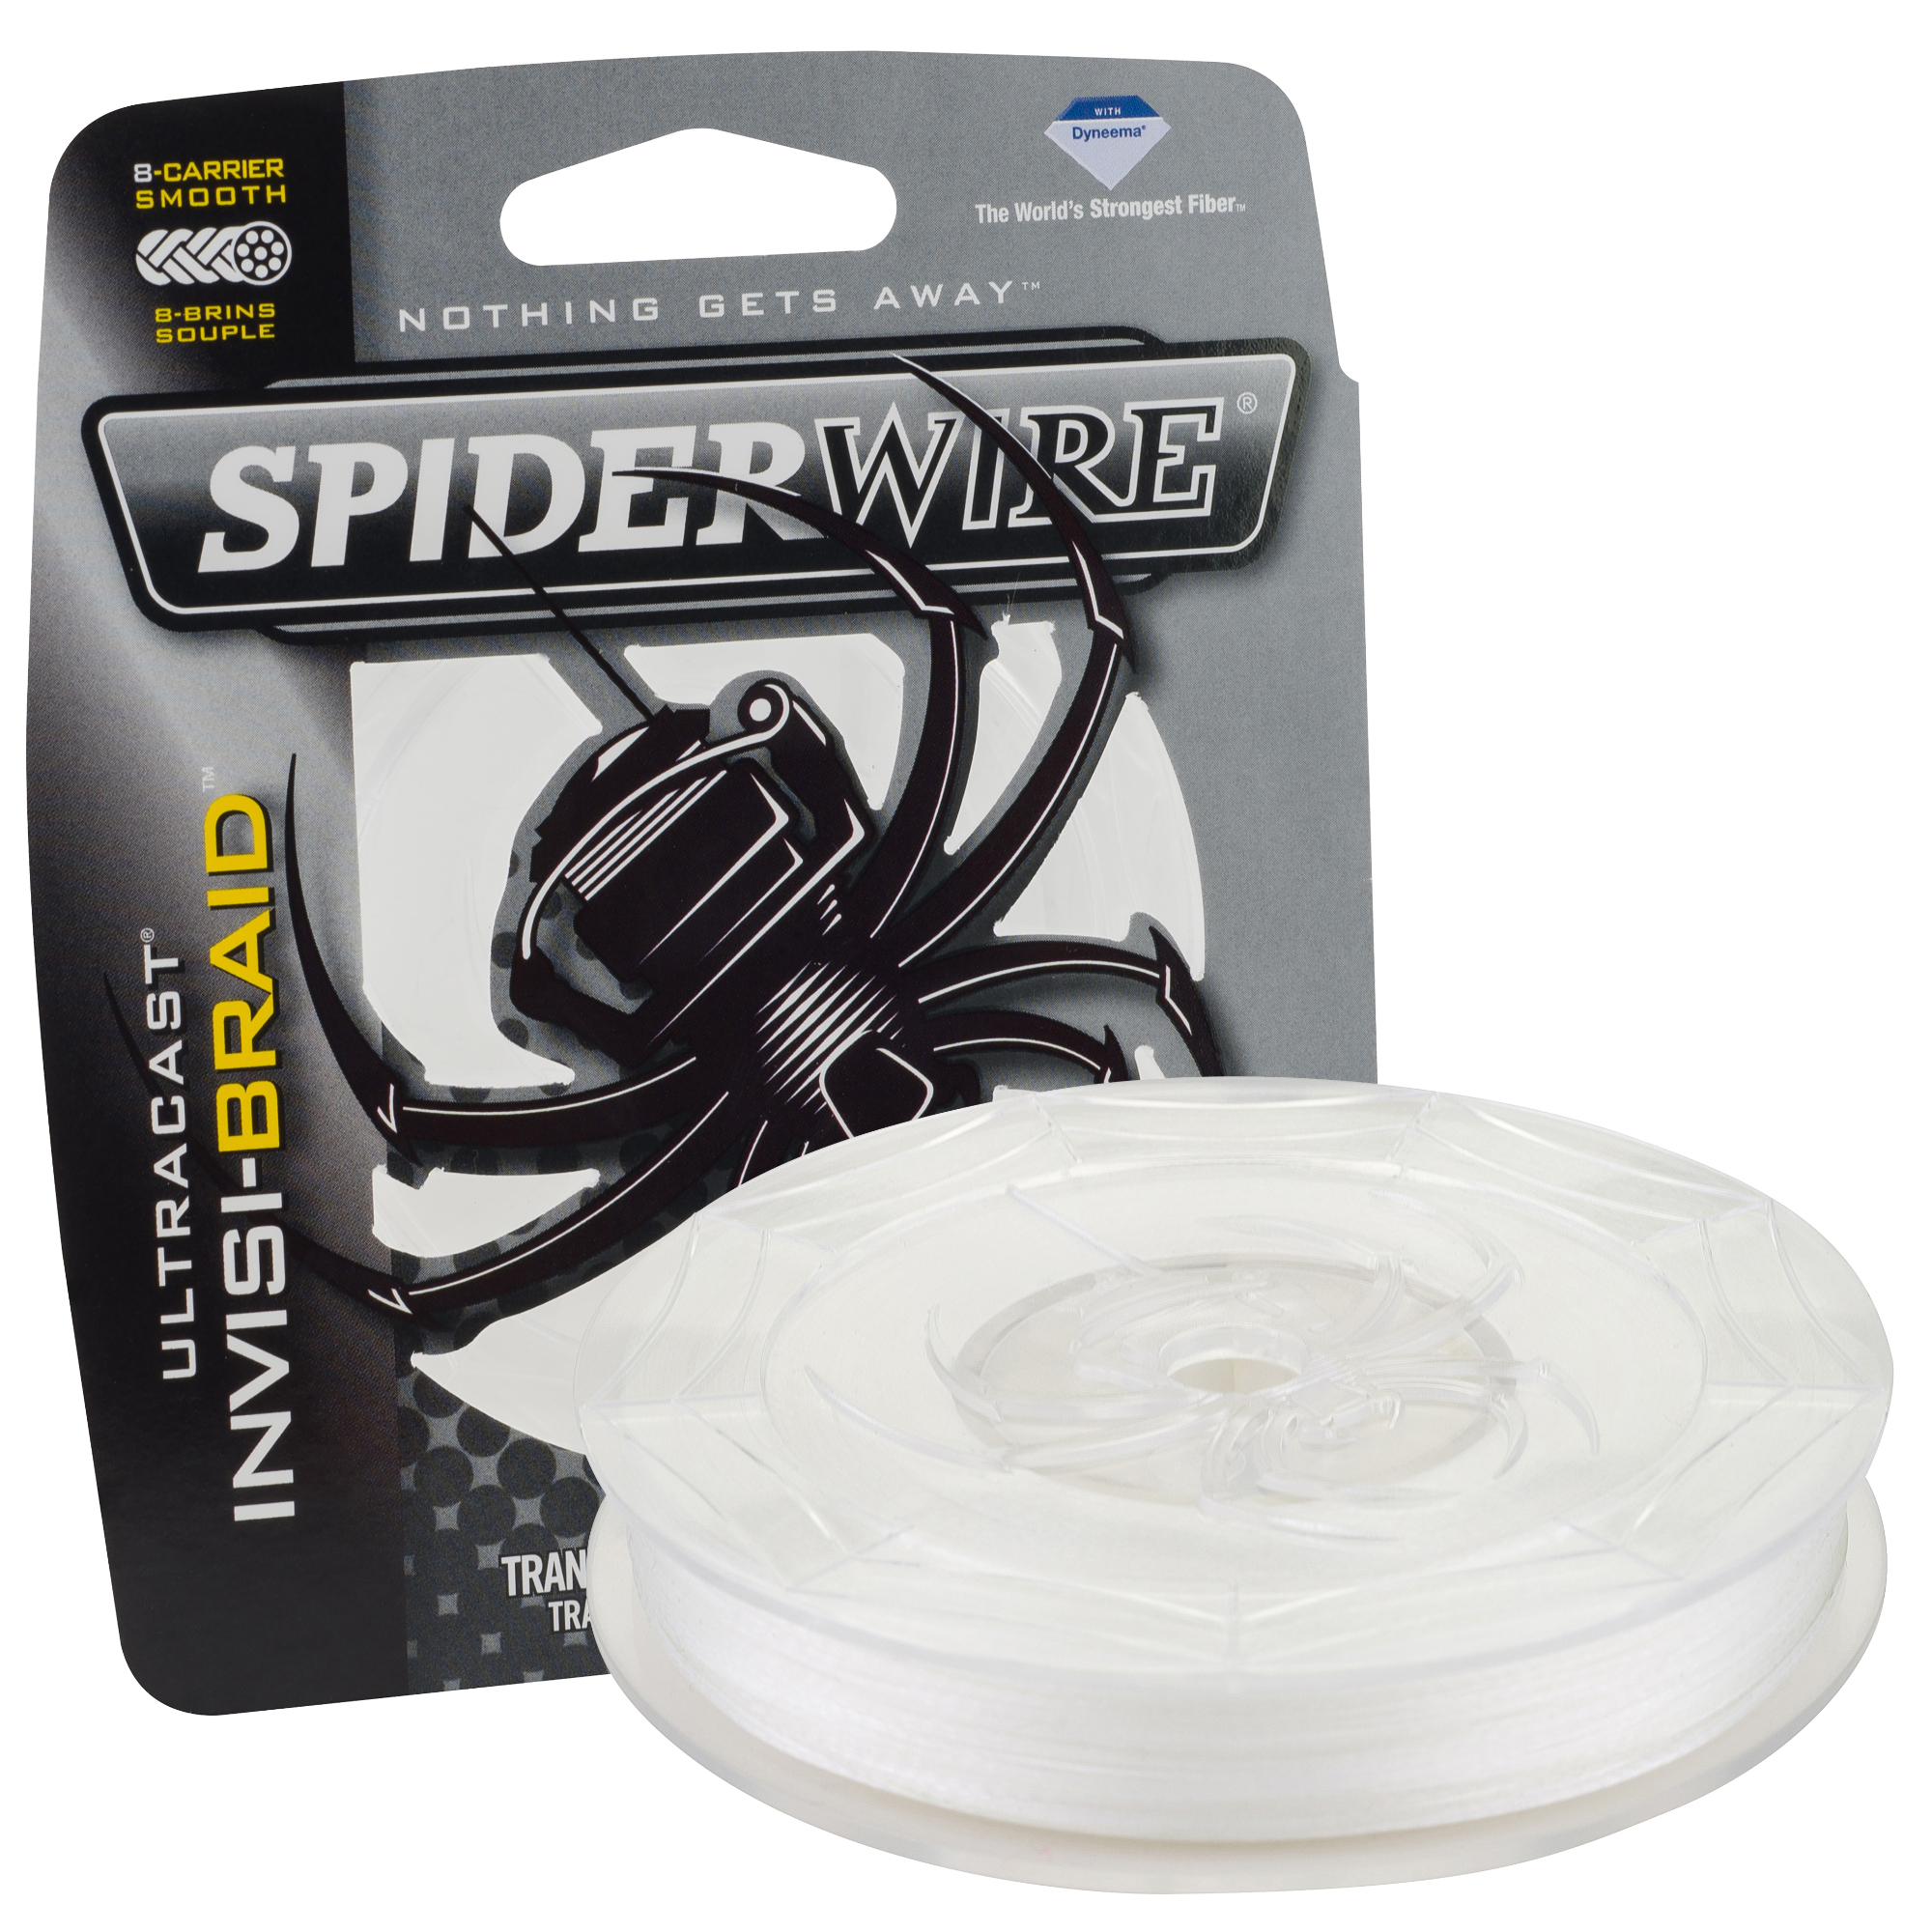 Spiderwire Ultracast Invisibraid Fishing Line 30 lb. Translucent